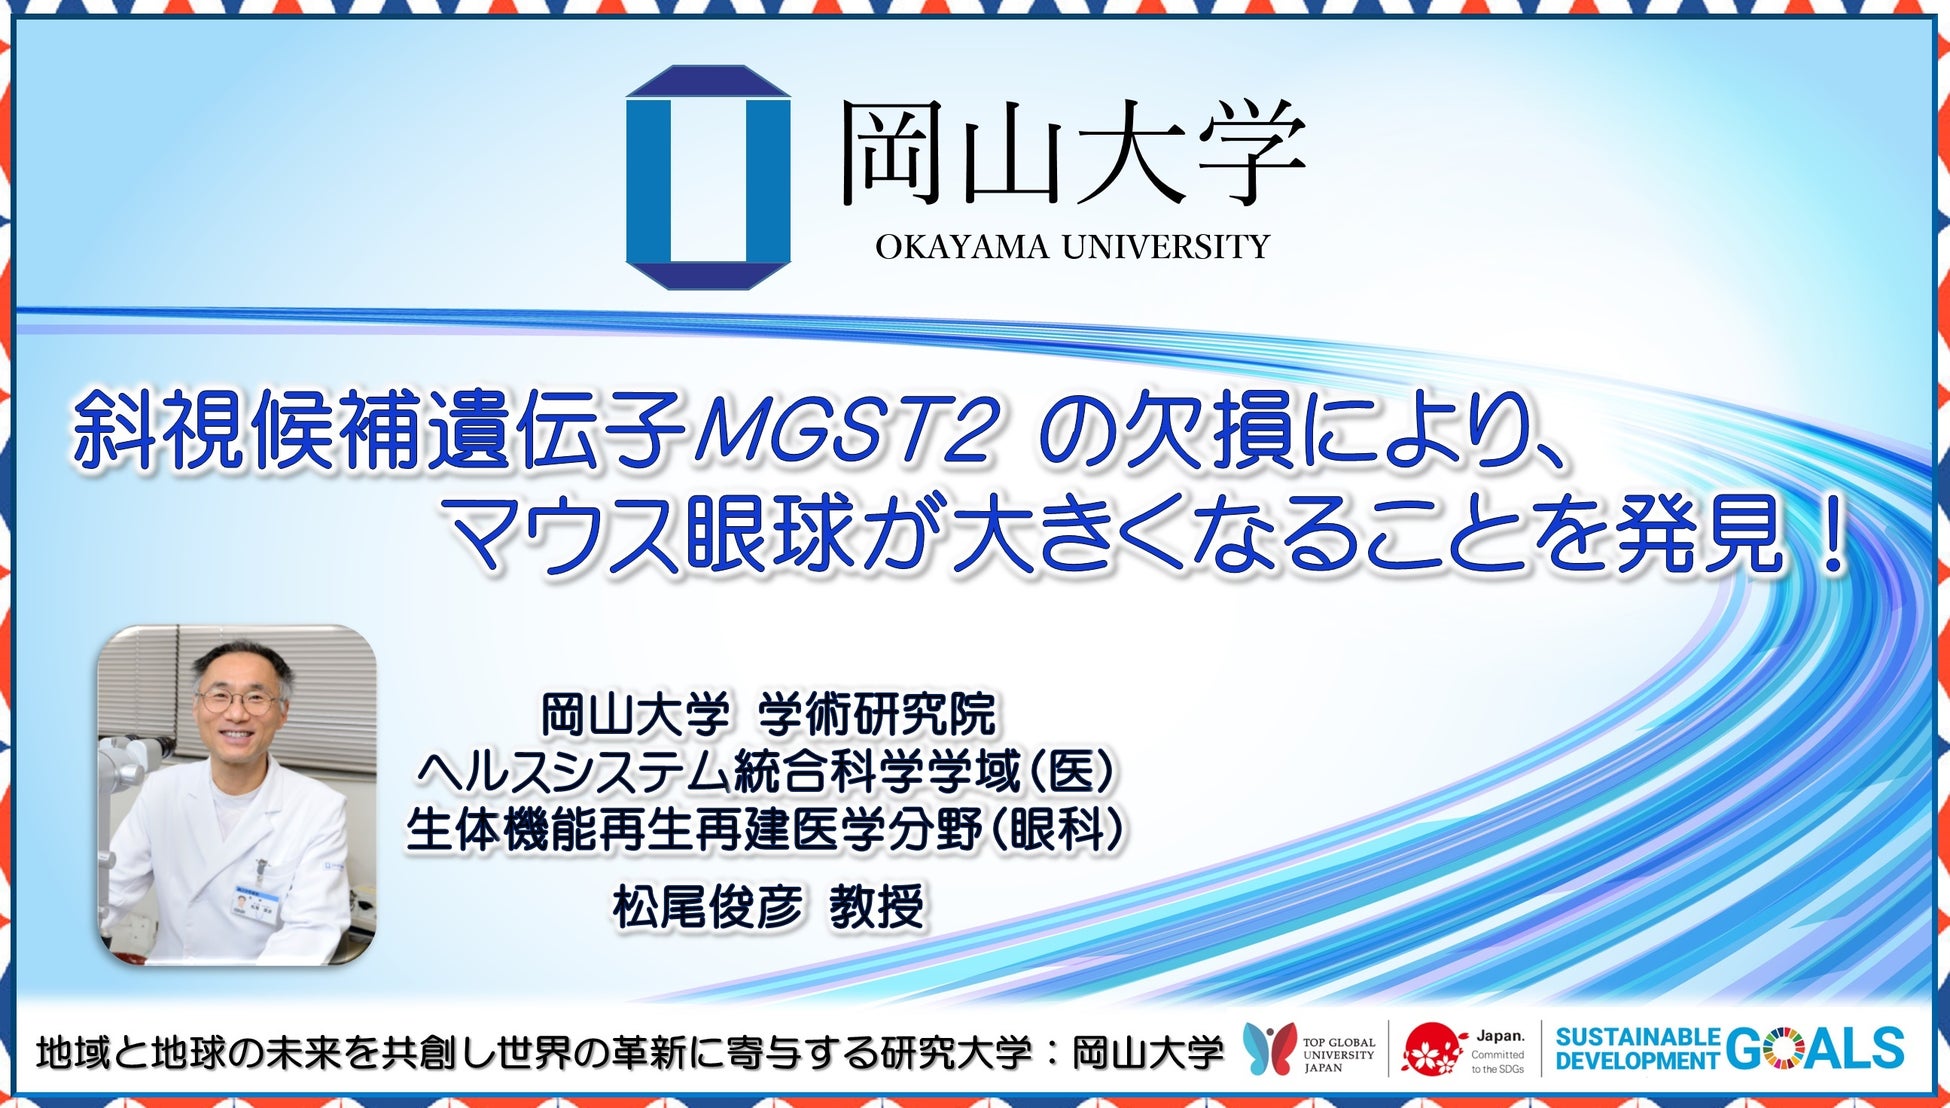 【岡山大学】斜視候補遺伝子MGST2の欠損により、マウス眼球が大きくなることを発見！